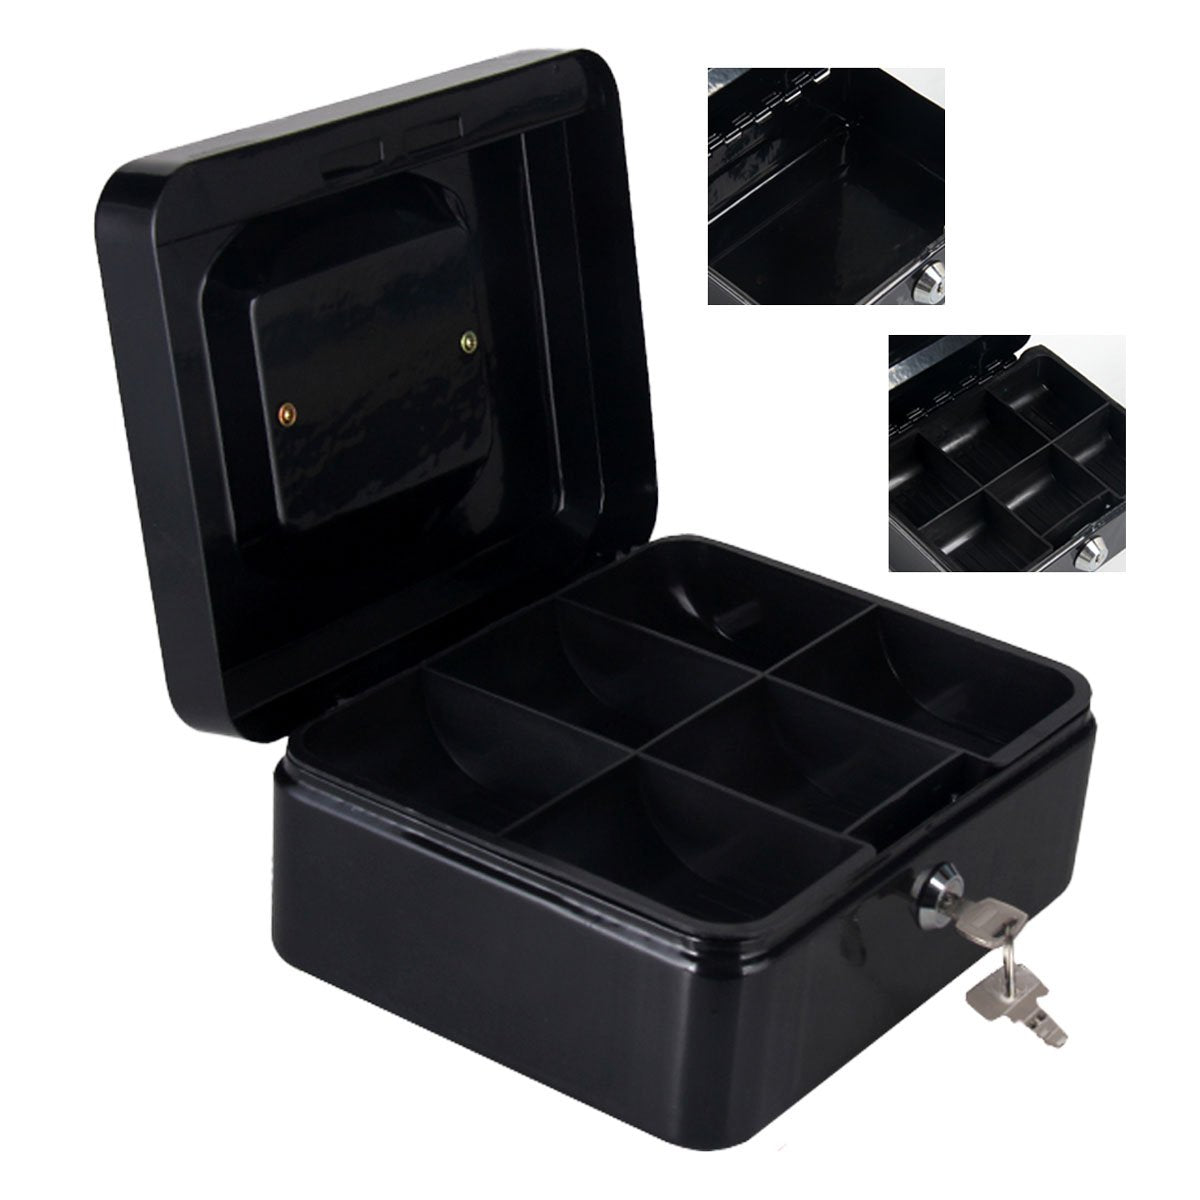 Cassetta Portavalori di Sicurezza in Acciaio con 2 Chiavi, Cassette dei contanti Vassoio Portamonete Integrato Dimensioni 20x16x9 cm, Colore Nero